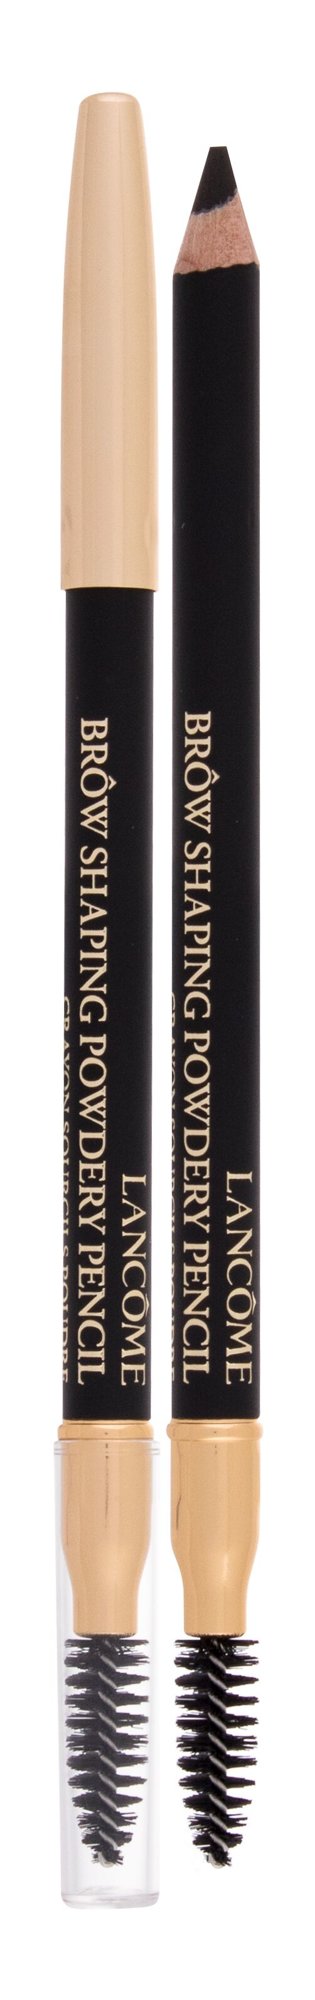 Lancome Brow Shaping Powdery Pencil antakių pieštukas